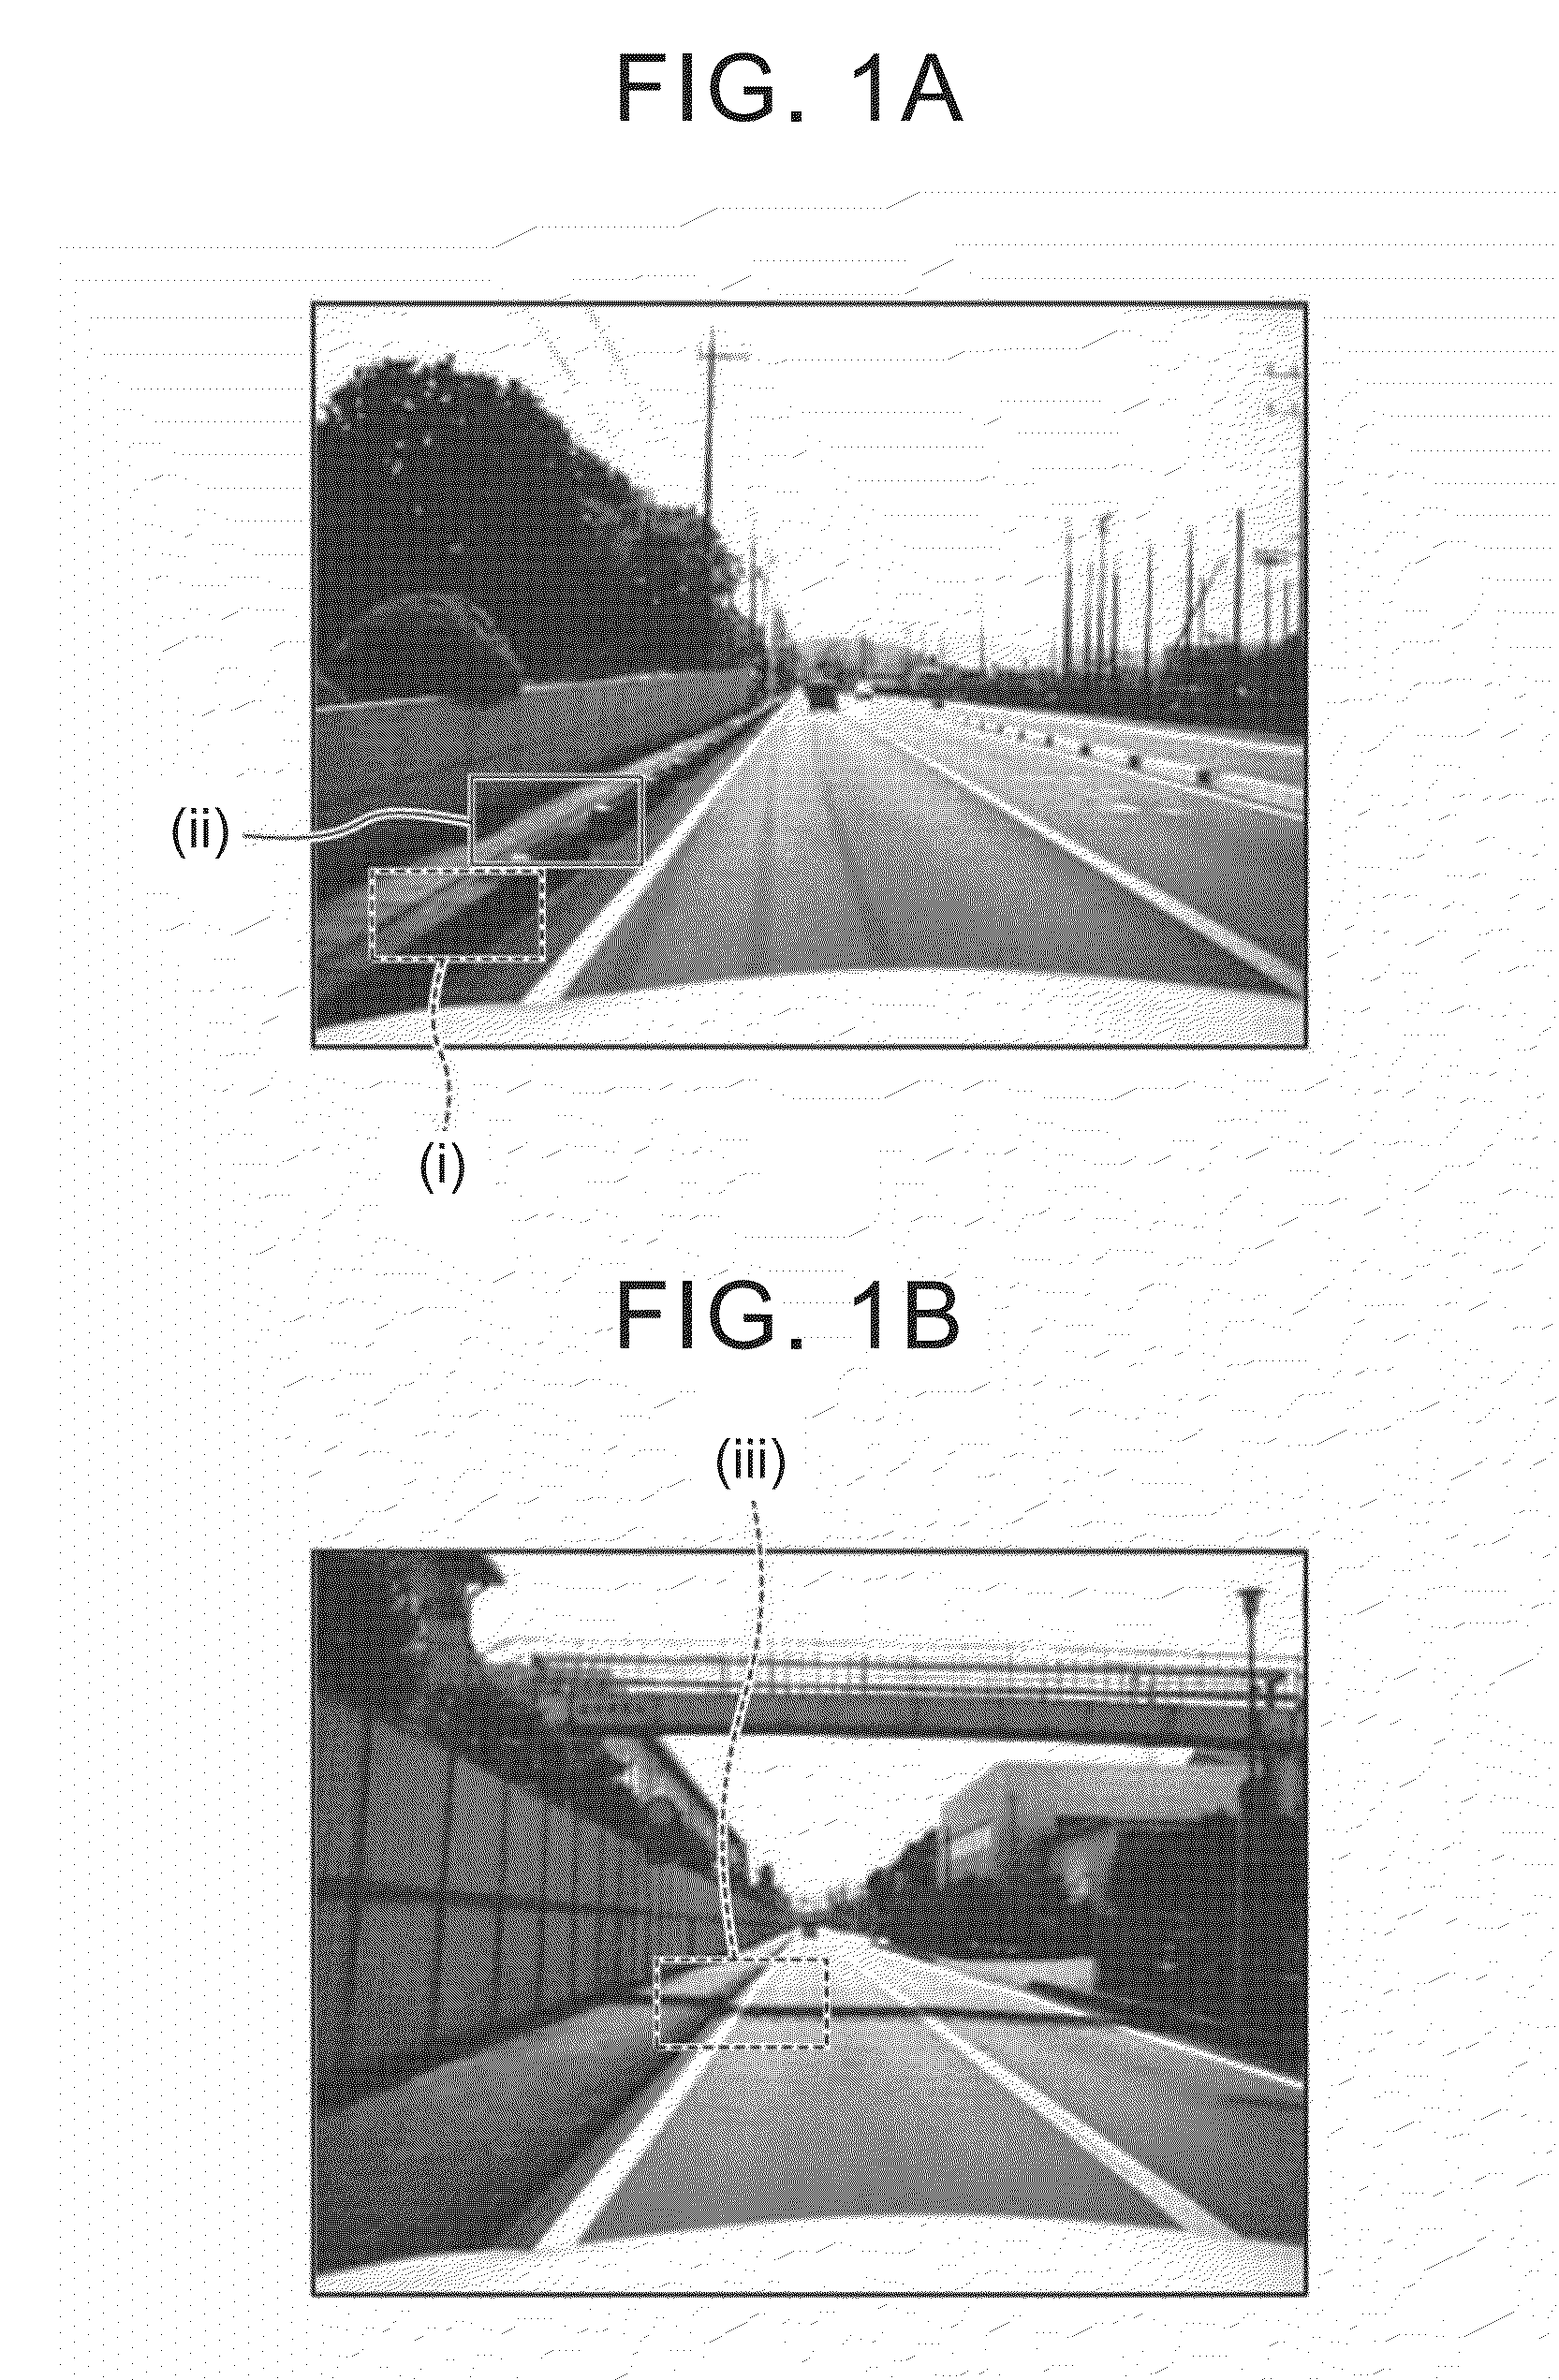 Lane boundary estimation device and lane boundary estimation method